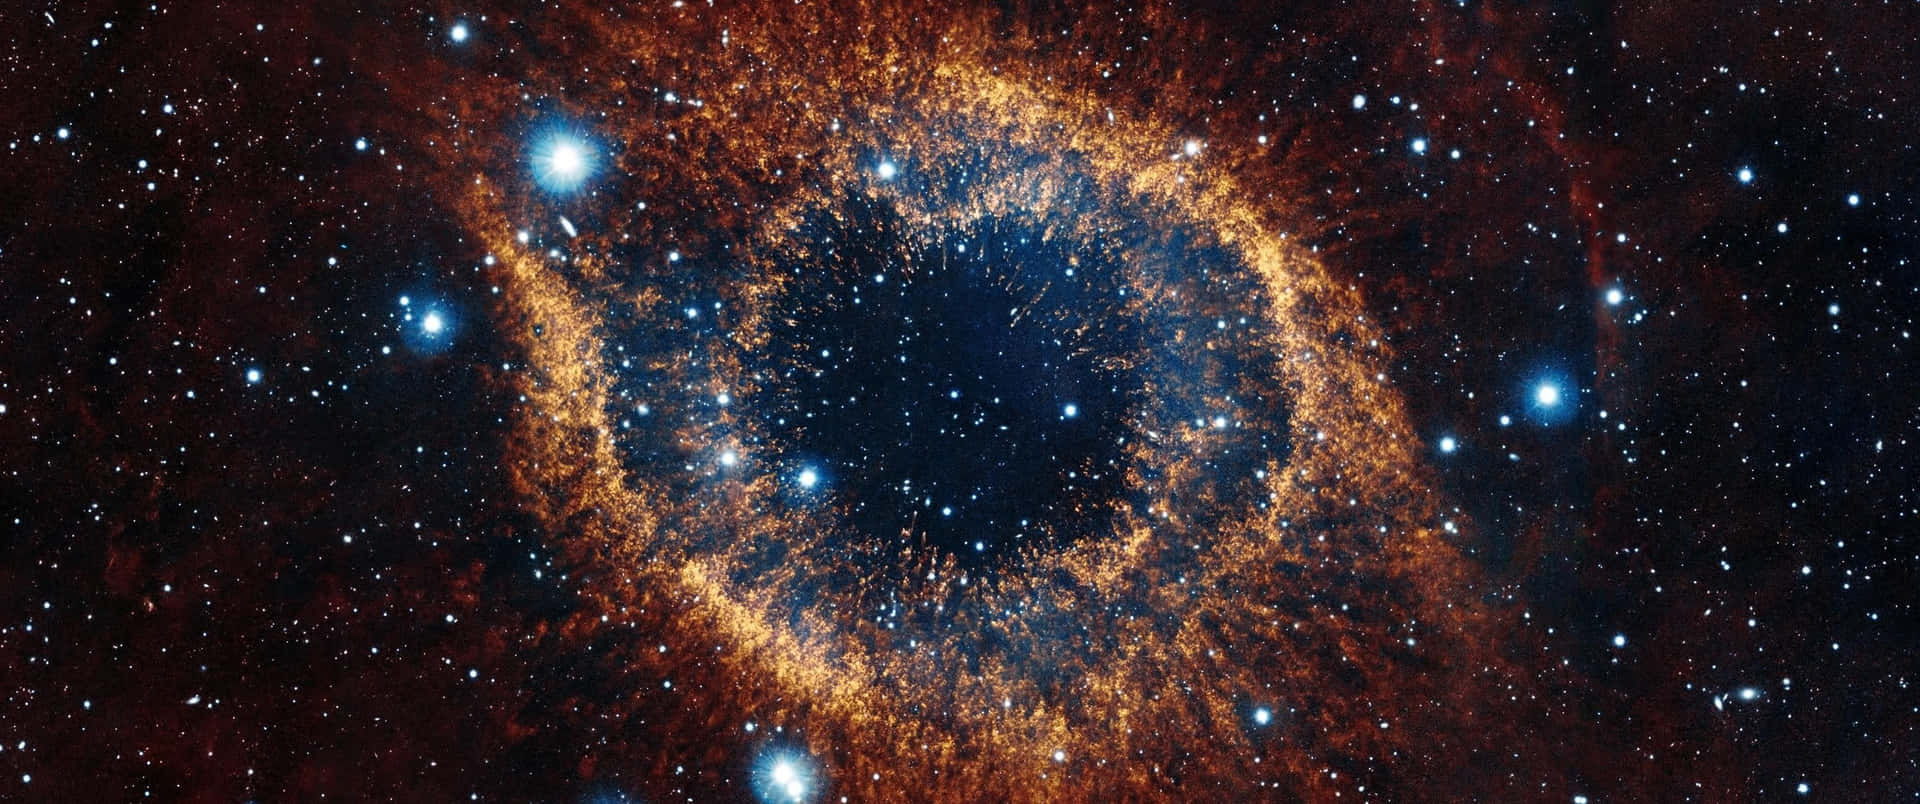 3440x1440 HD Helix Nebula Wallpaper